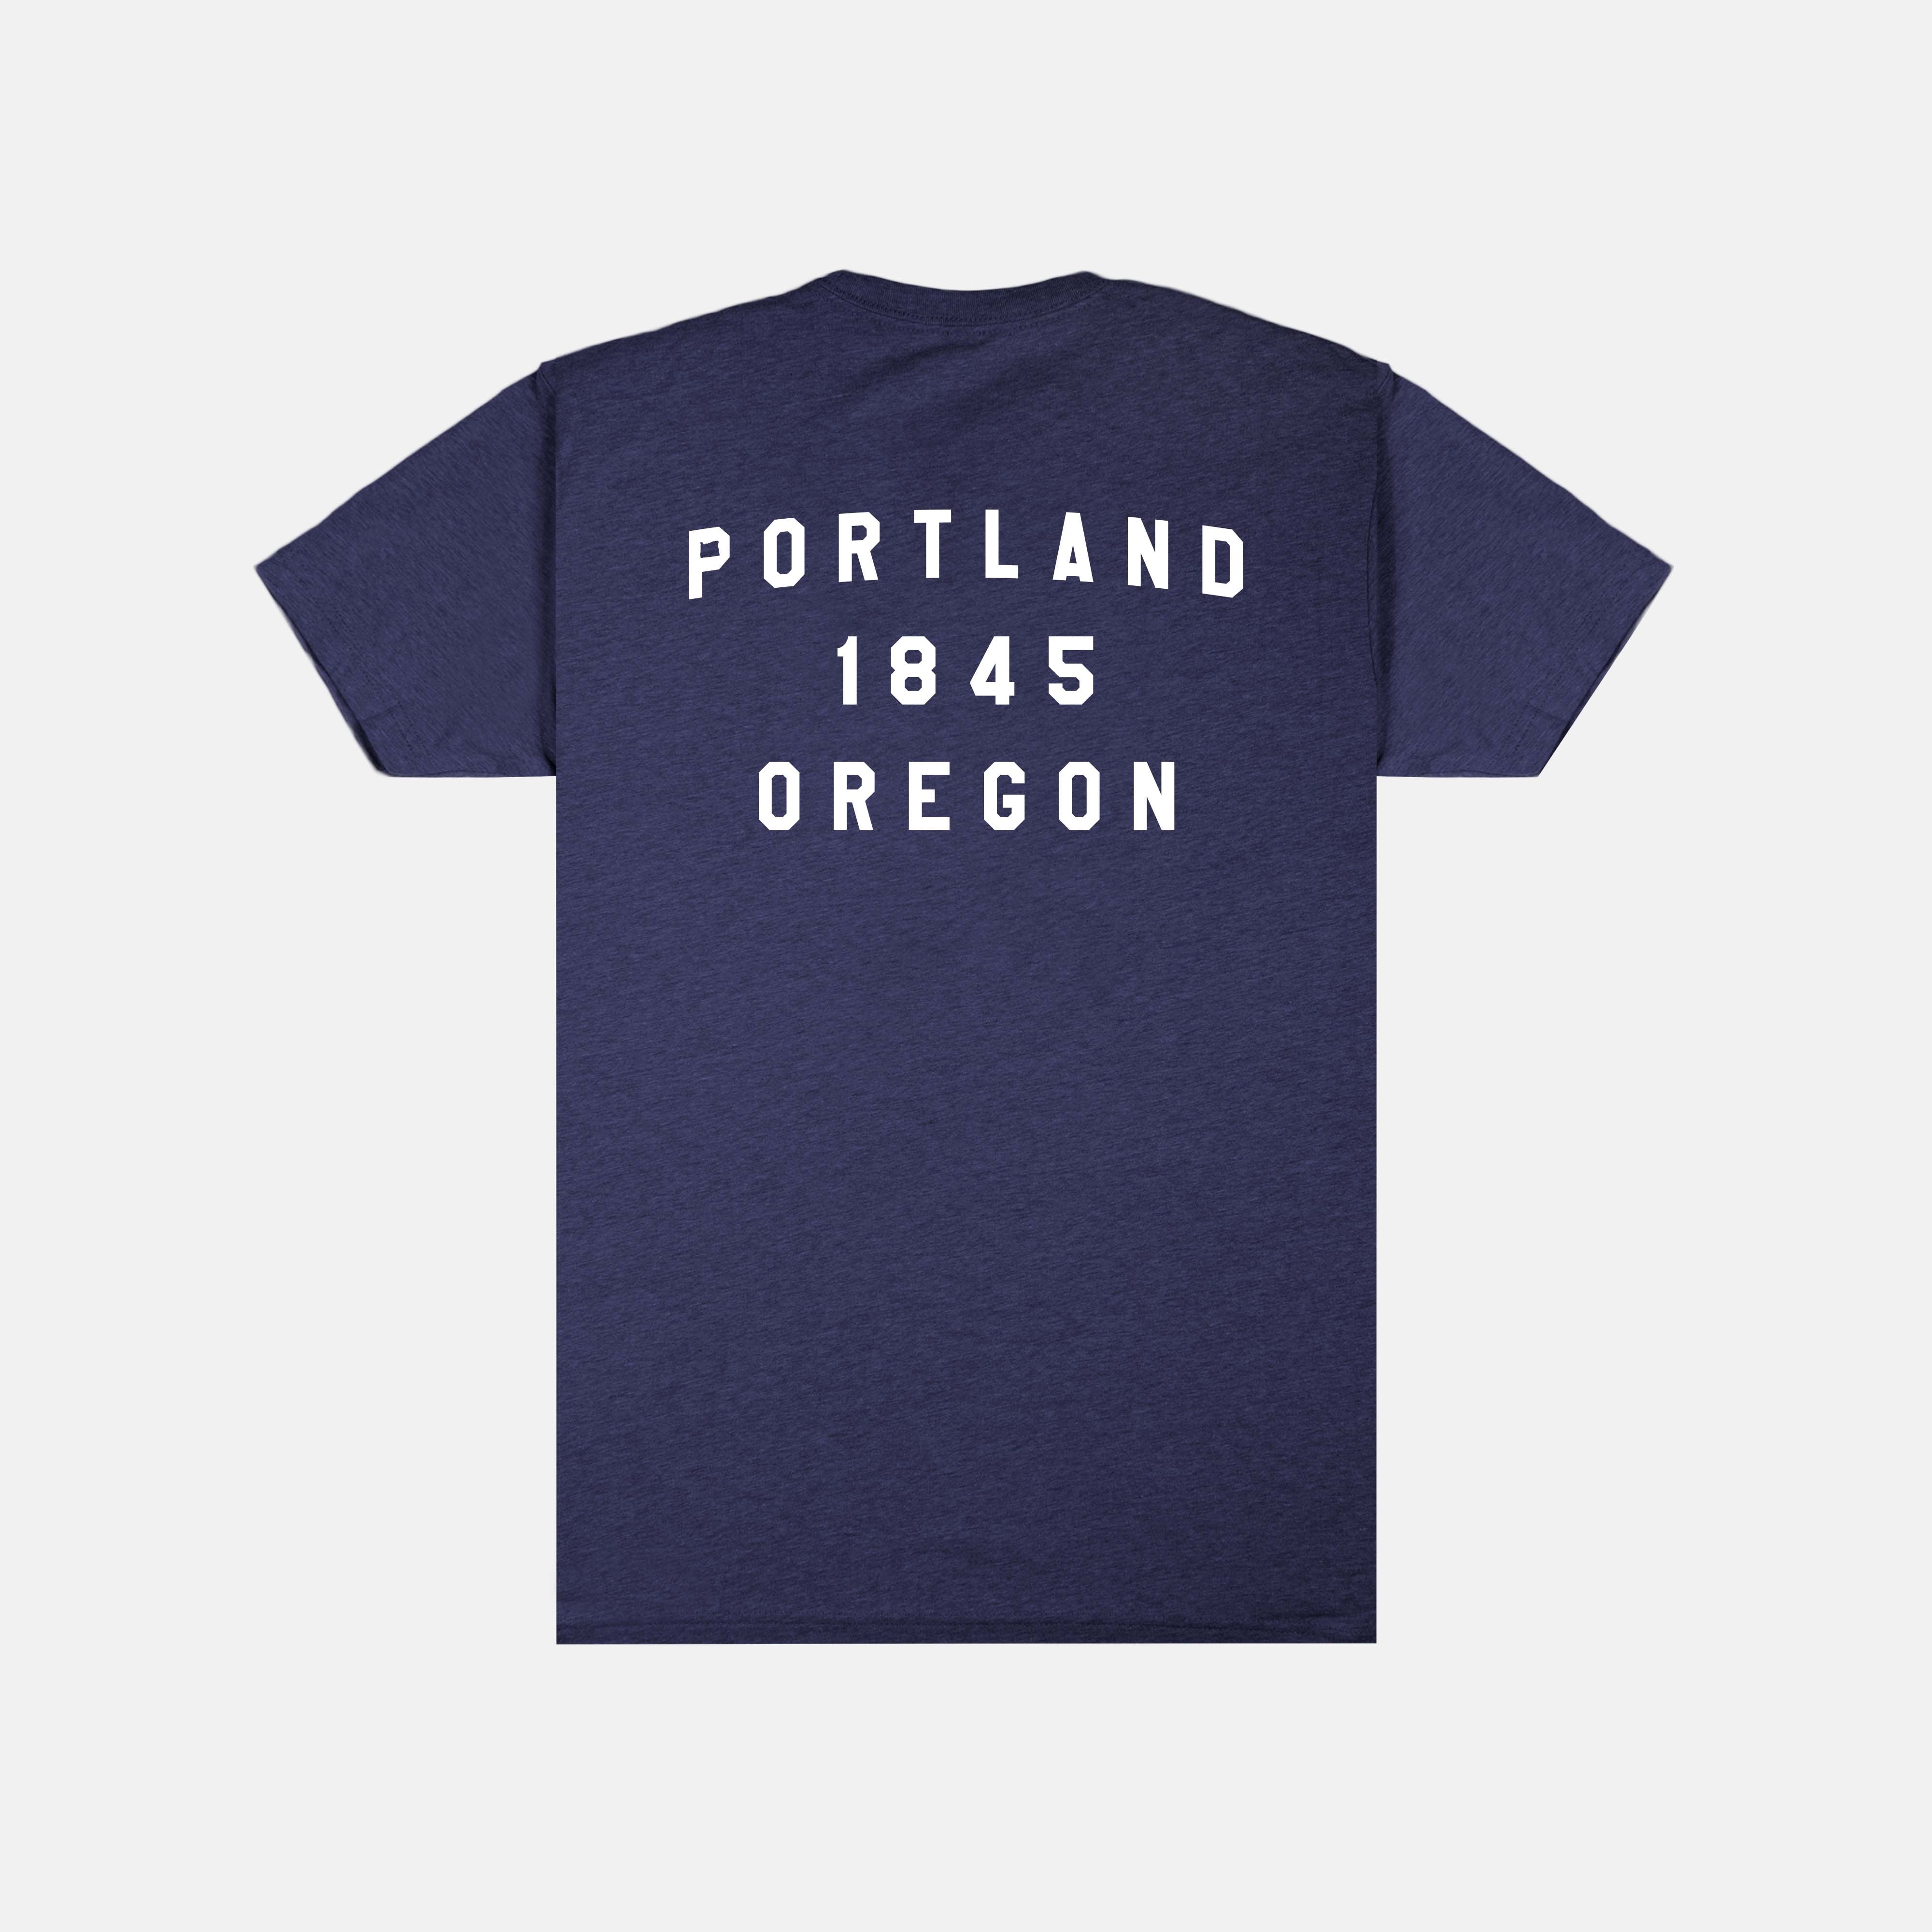 Portland Gear Online